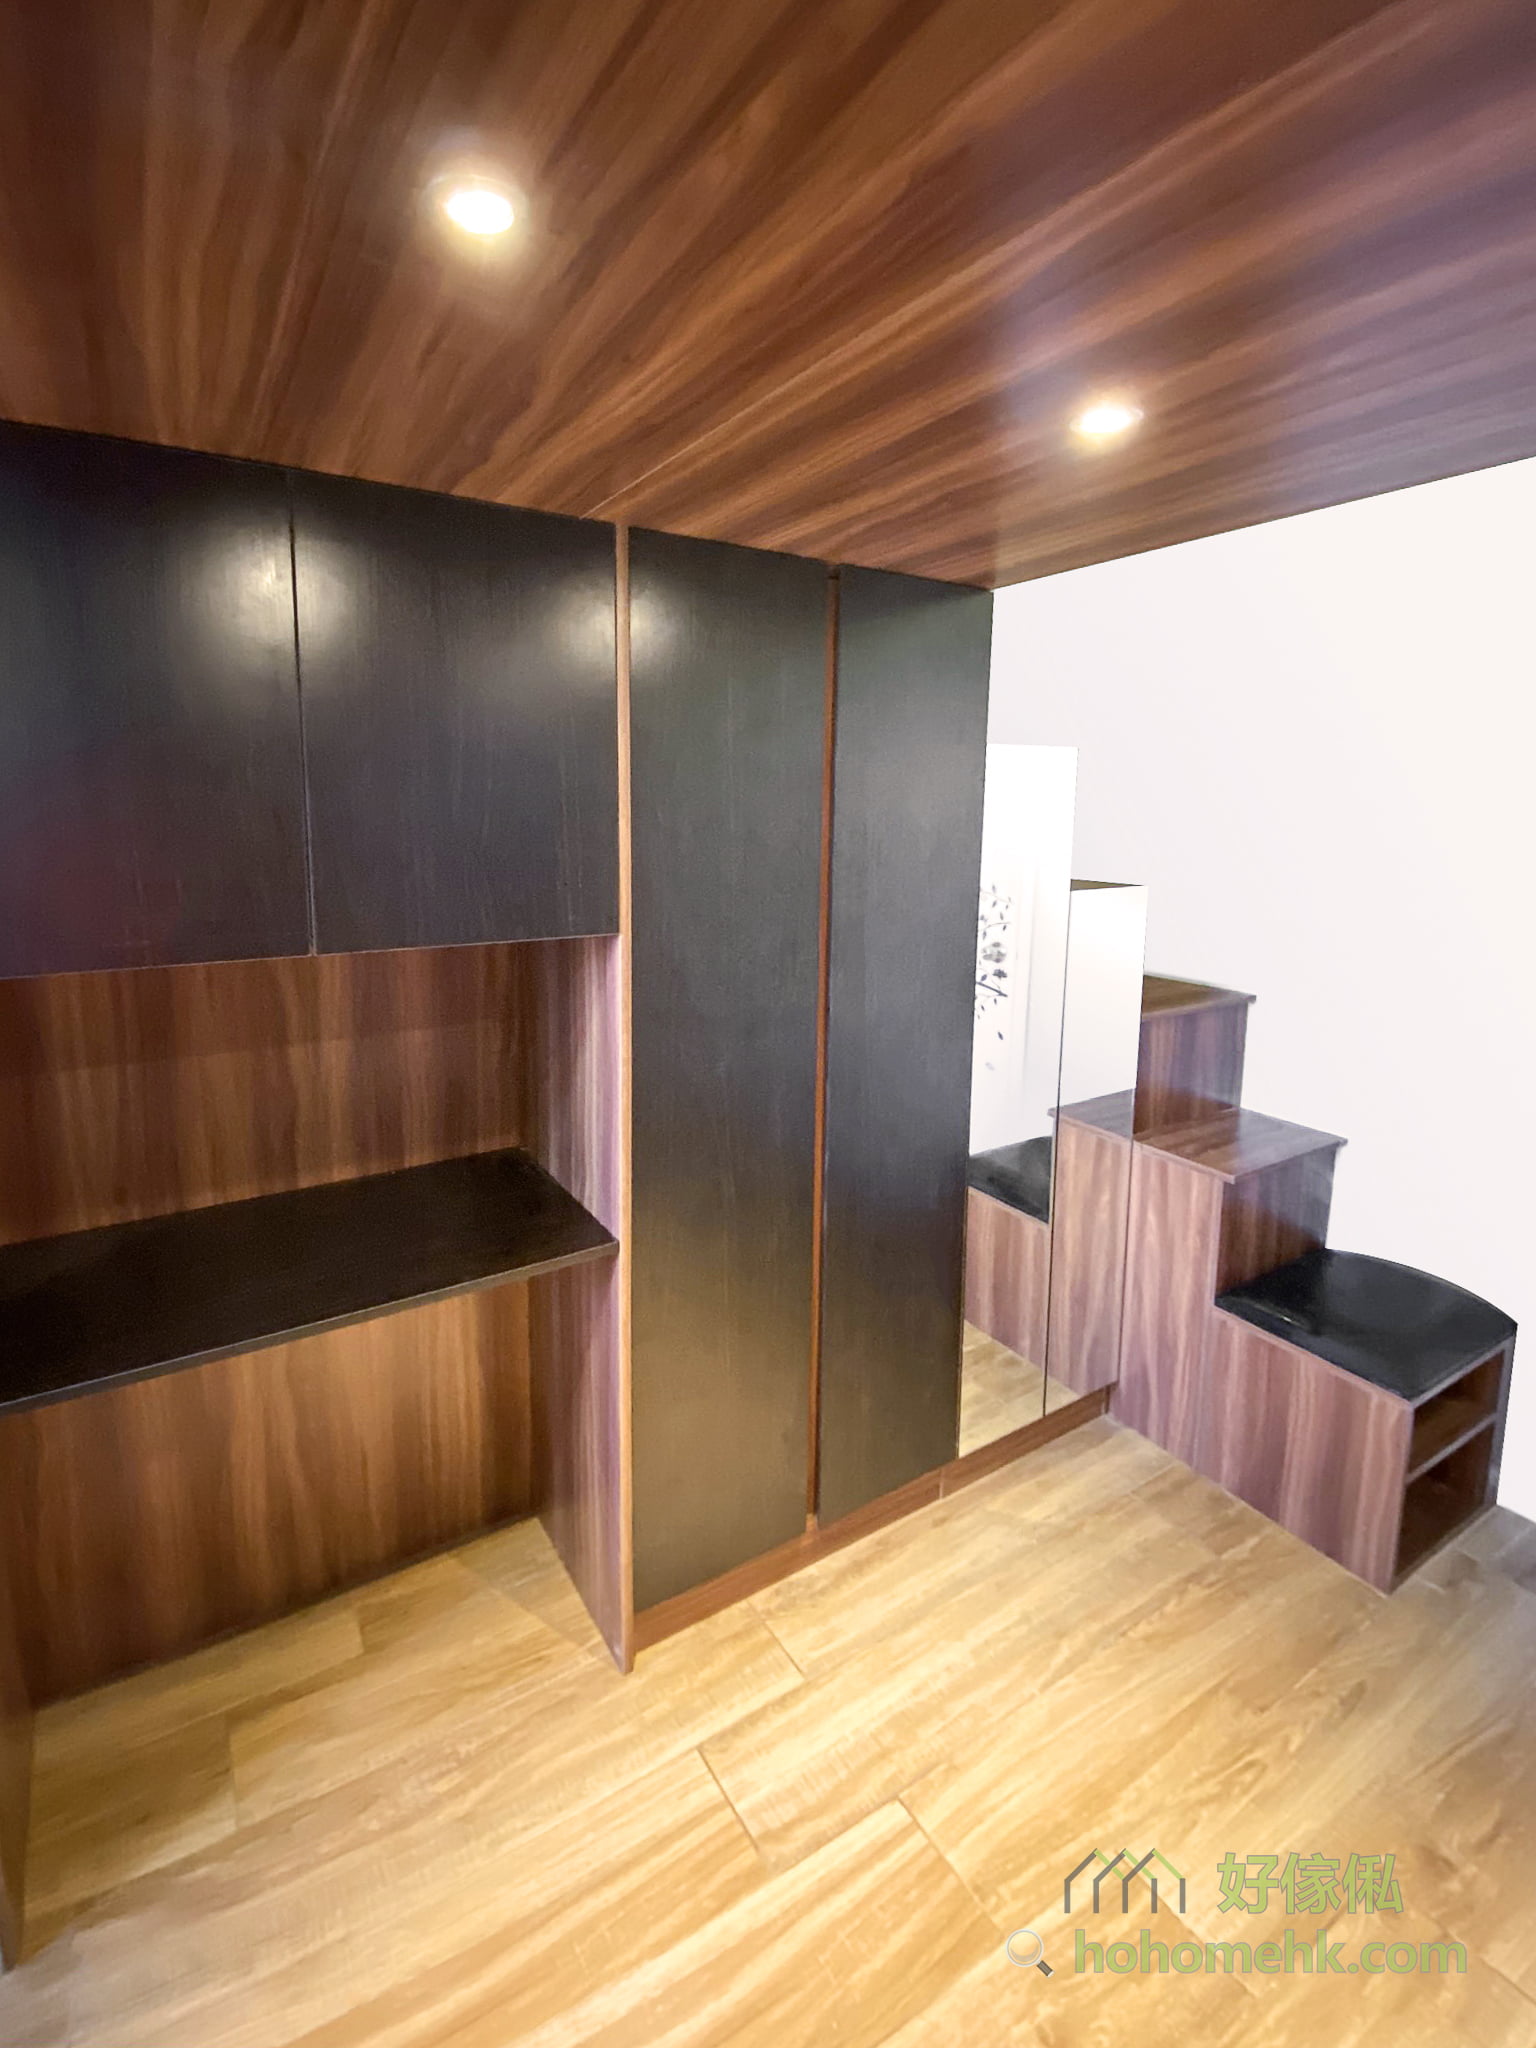 客廳特色夾層, 玄關櫃及樓梯收納櫃一體成形